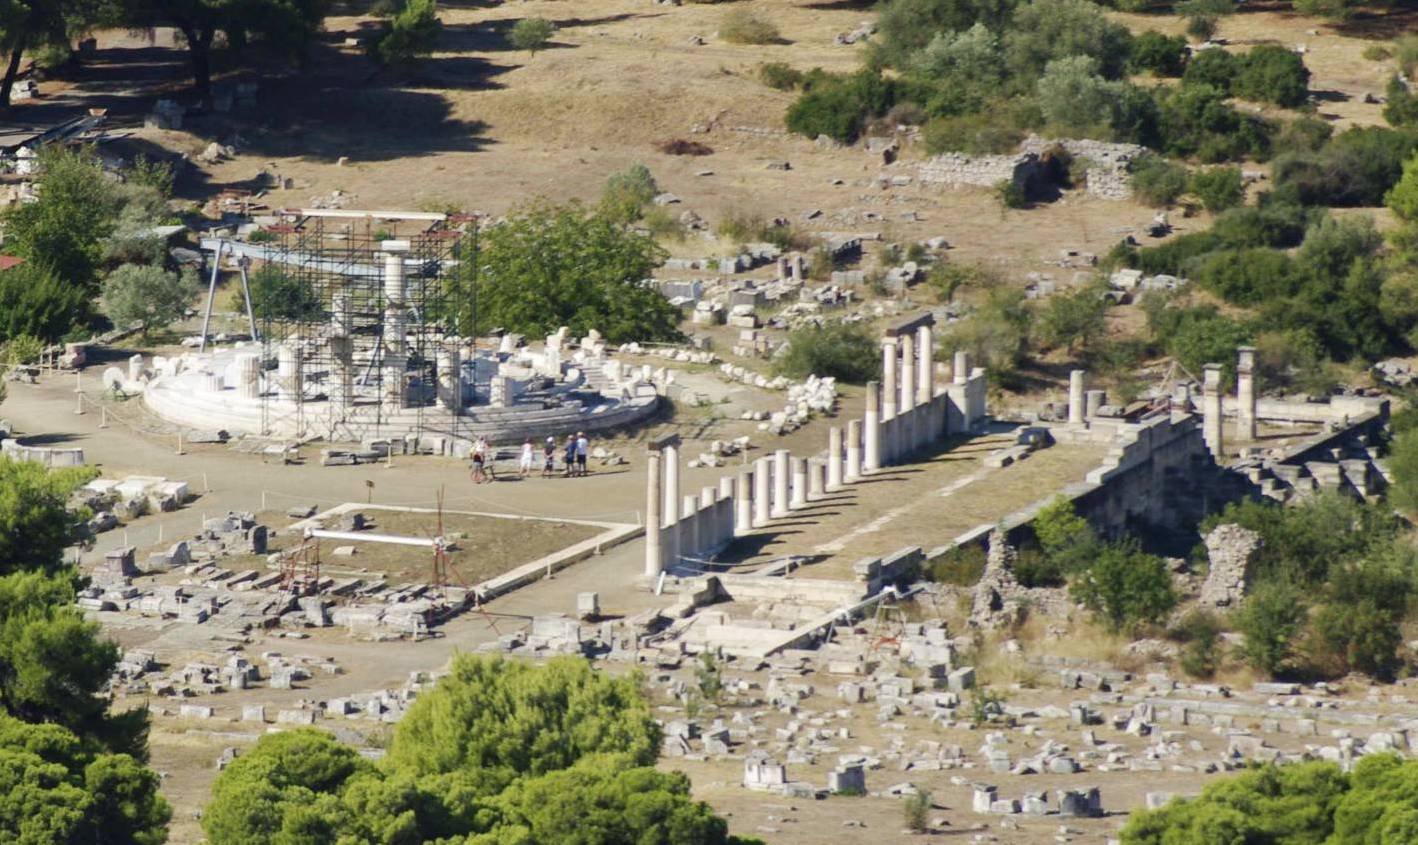 Αρχαίο θέατρο Επιδαύρου